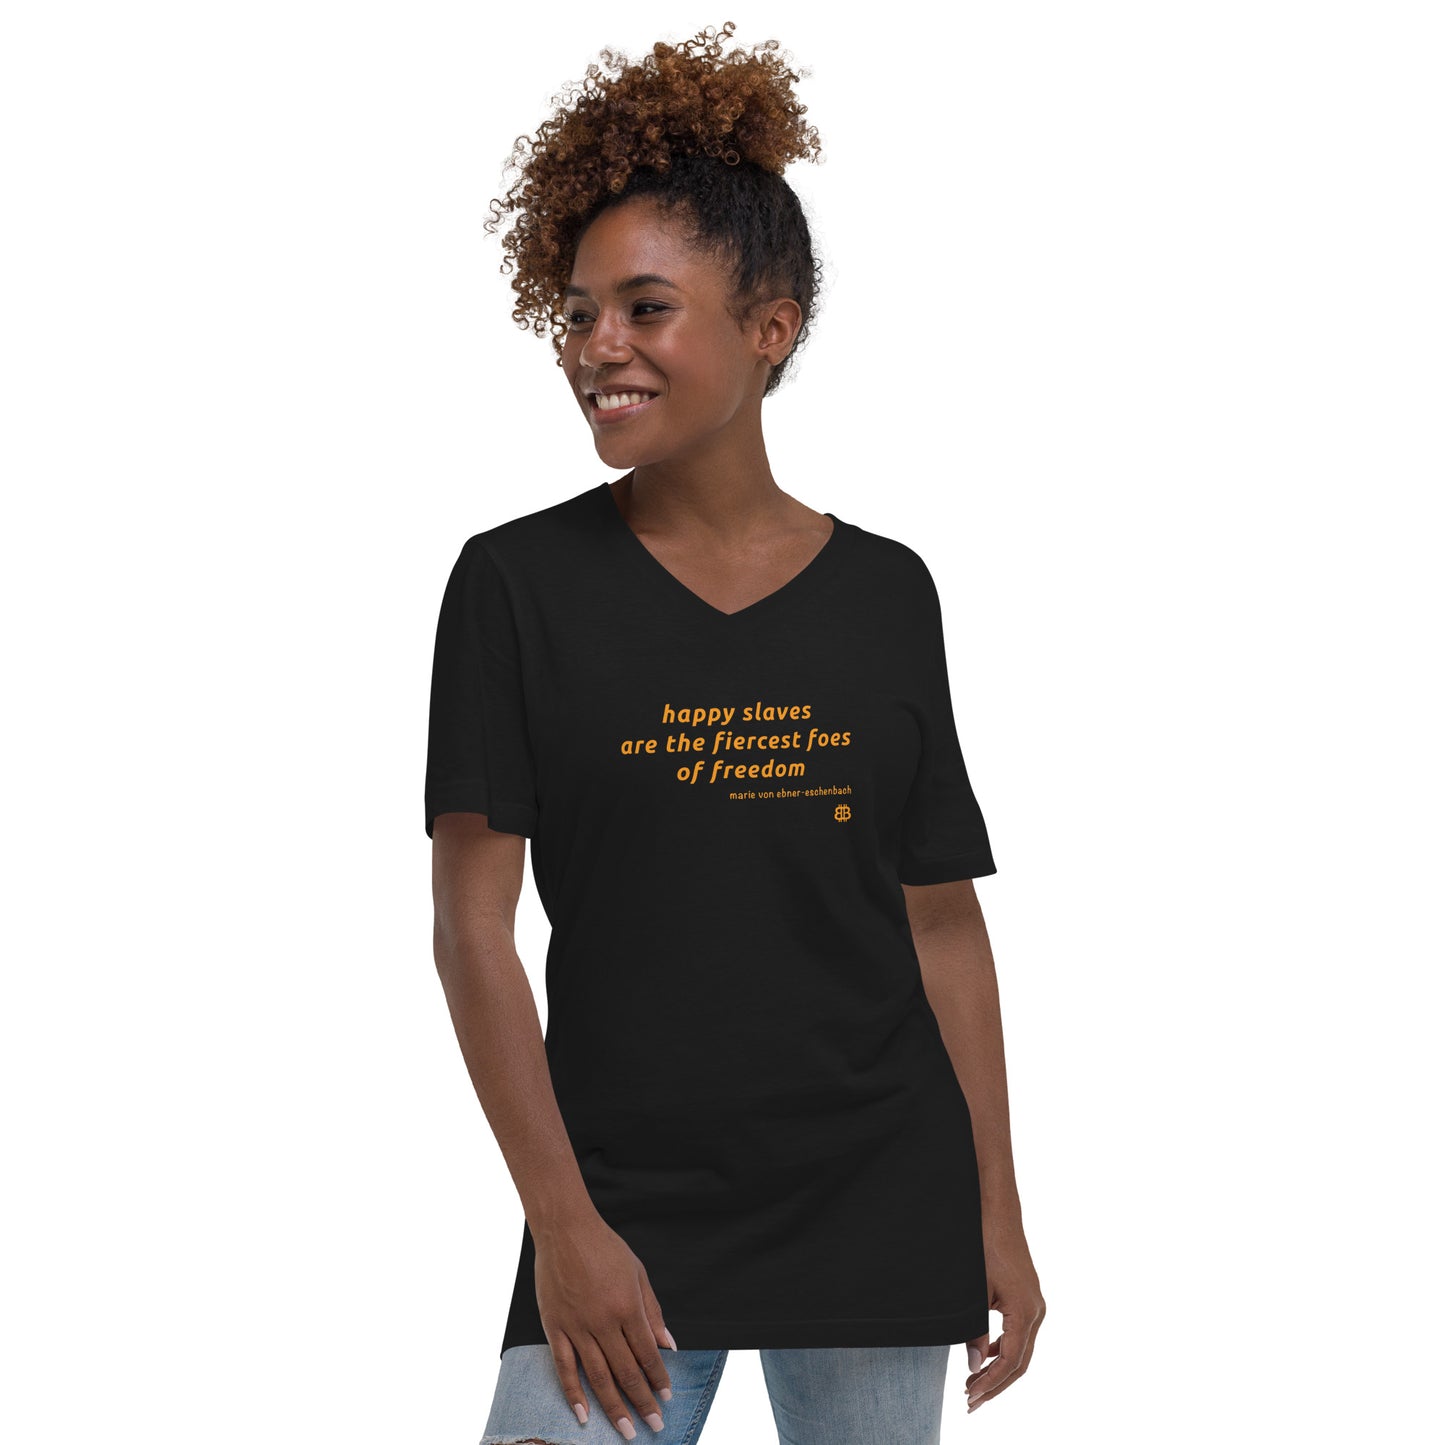 Women's Short Sleeve V-Neck T-Shirt "Slaves"